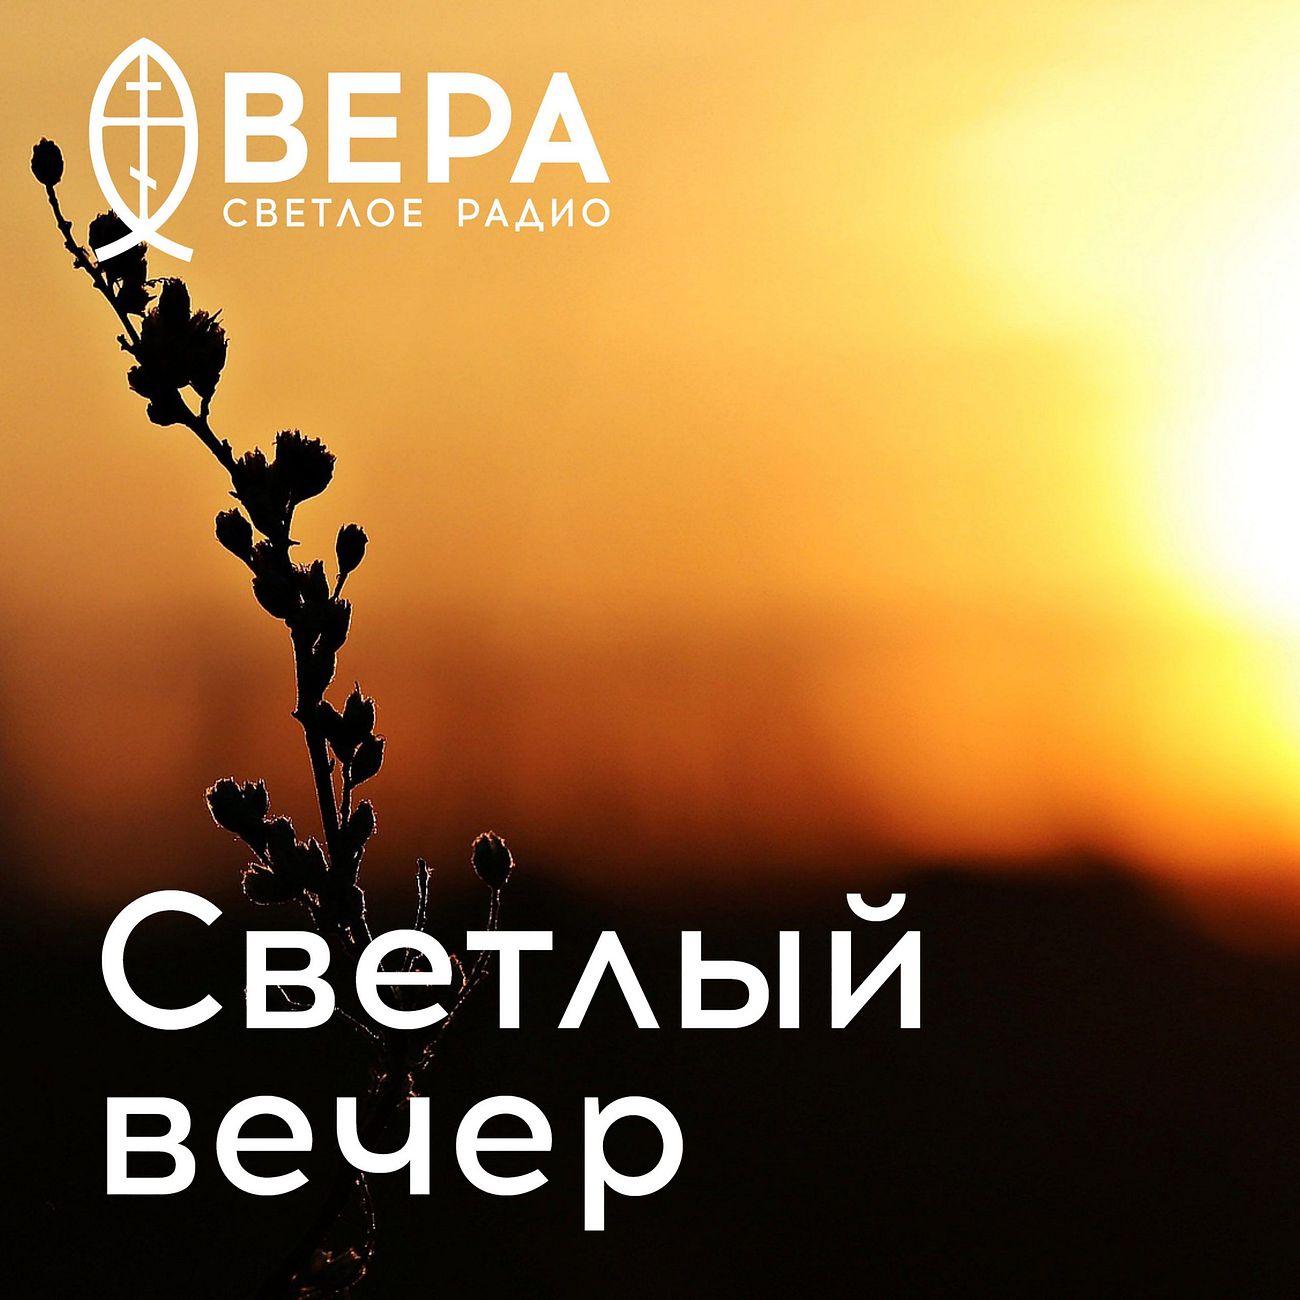 Светлый вечер - Радио ВЕРА